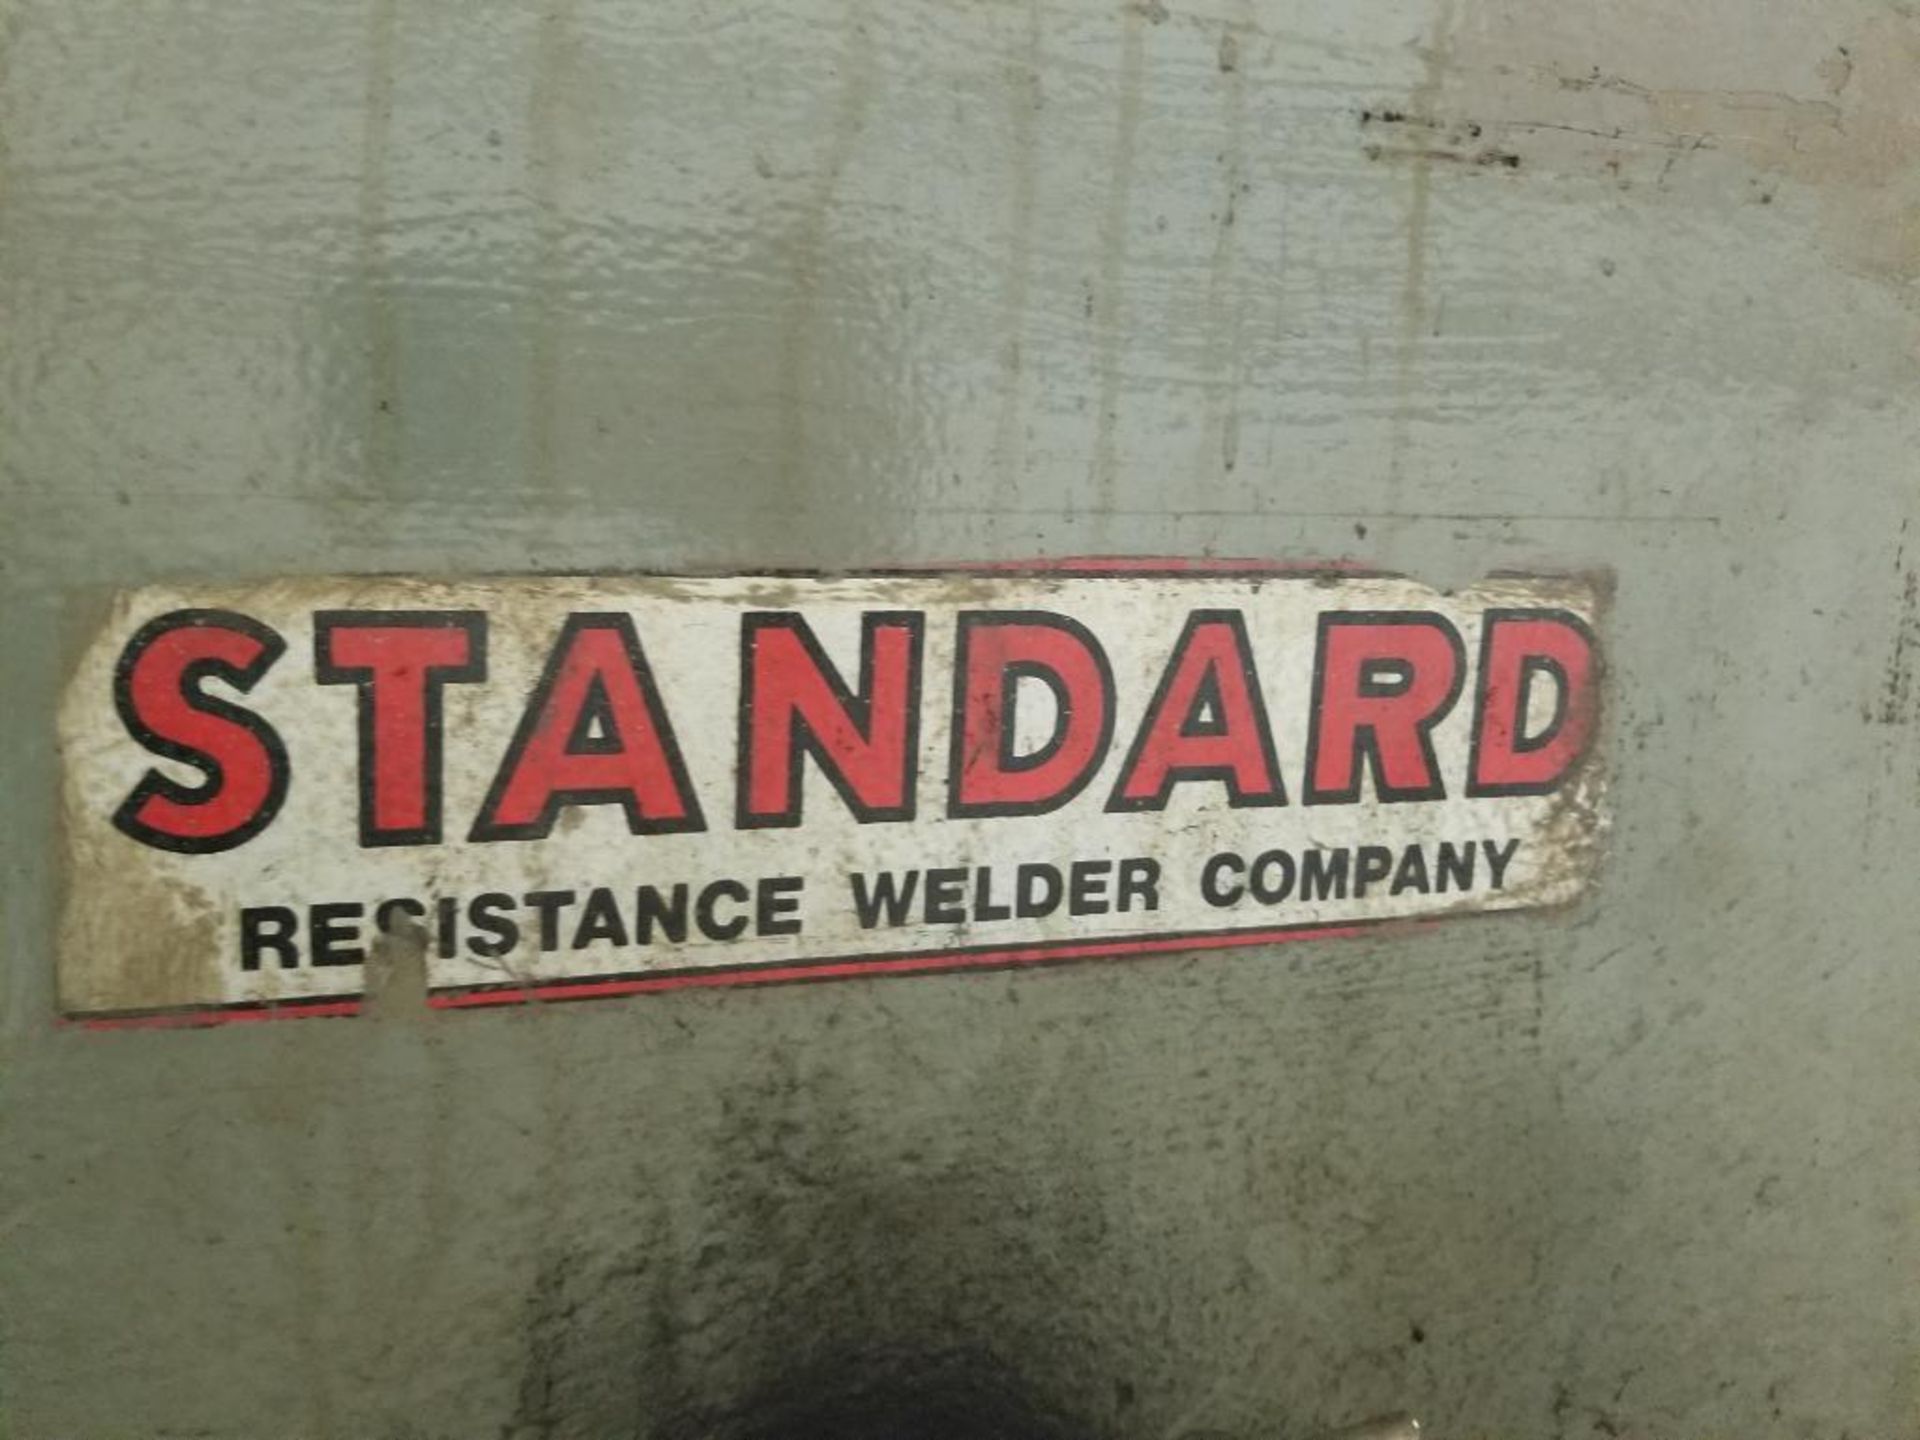 Standard Resistance Welder Company PP1-24-100 w/ Entron EN1000 control welding system press. 440V. - Image 16 of 16